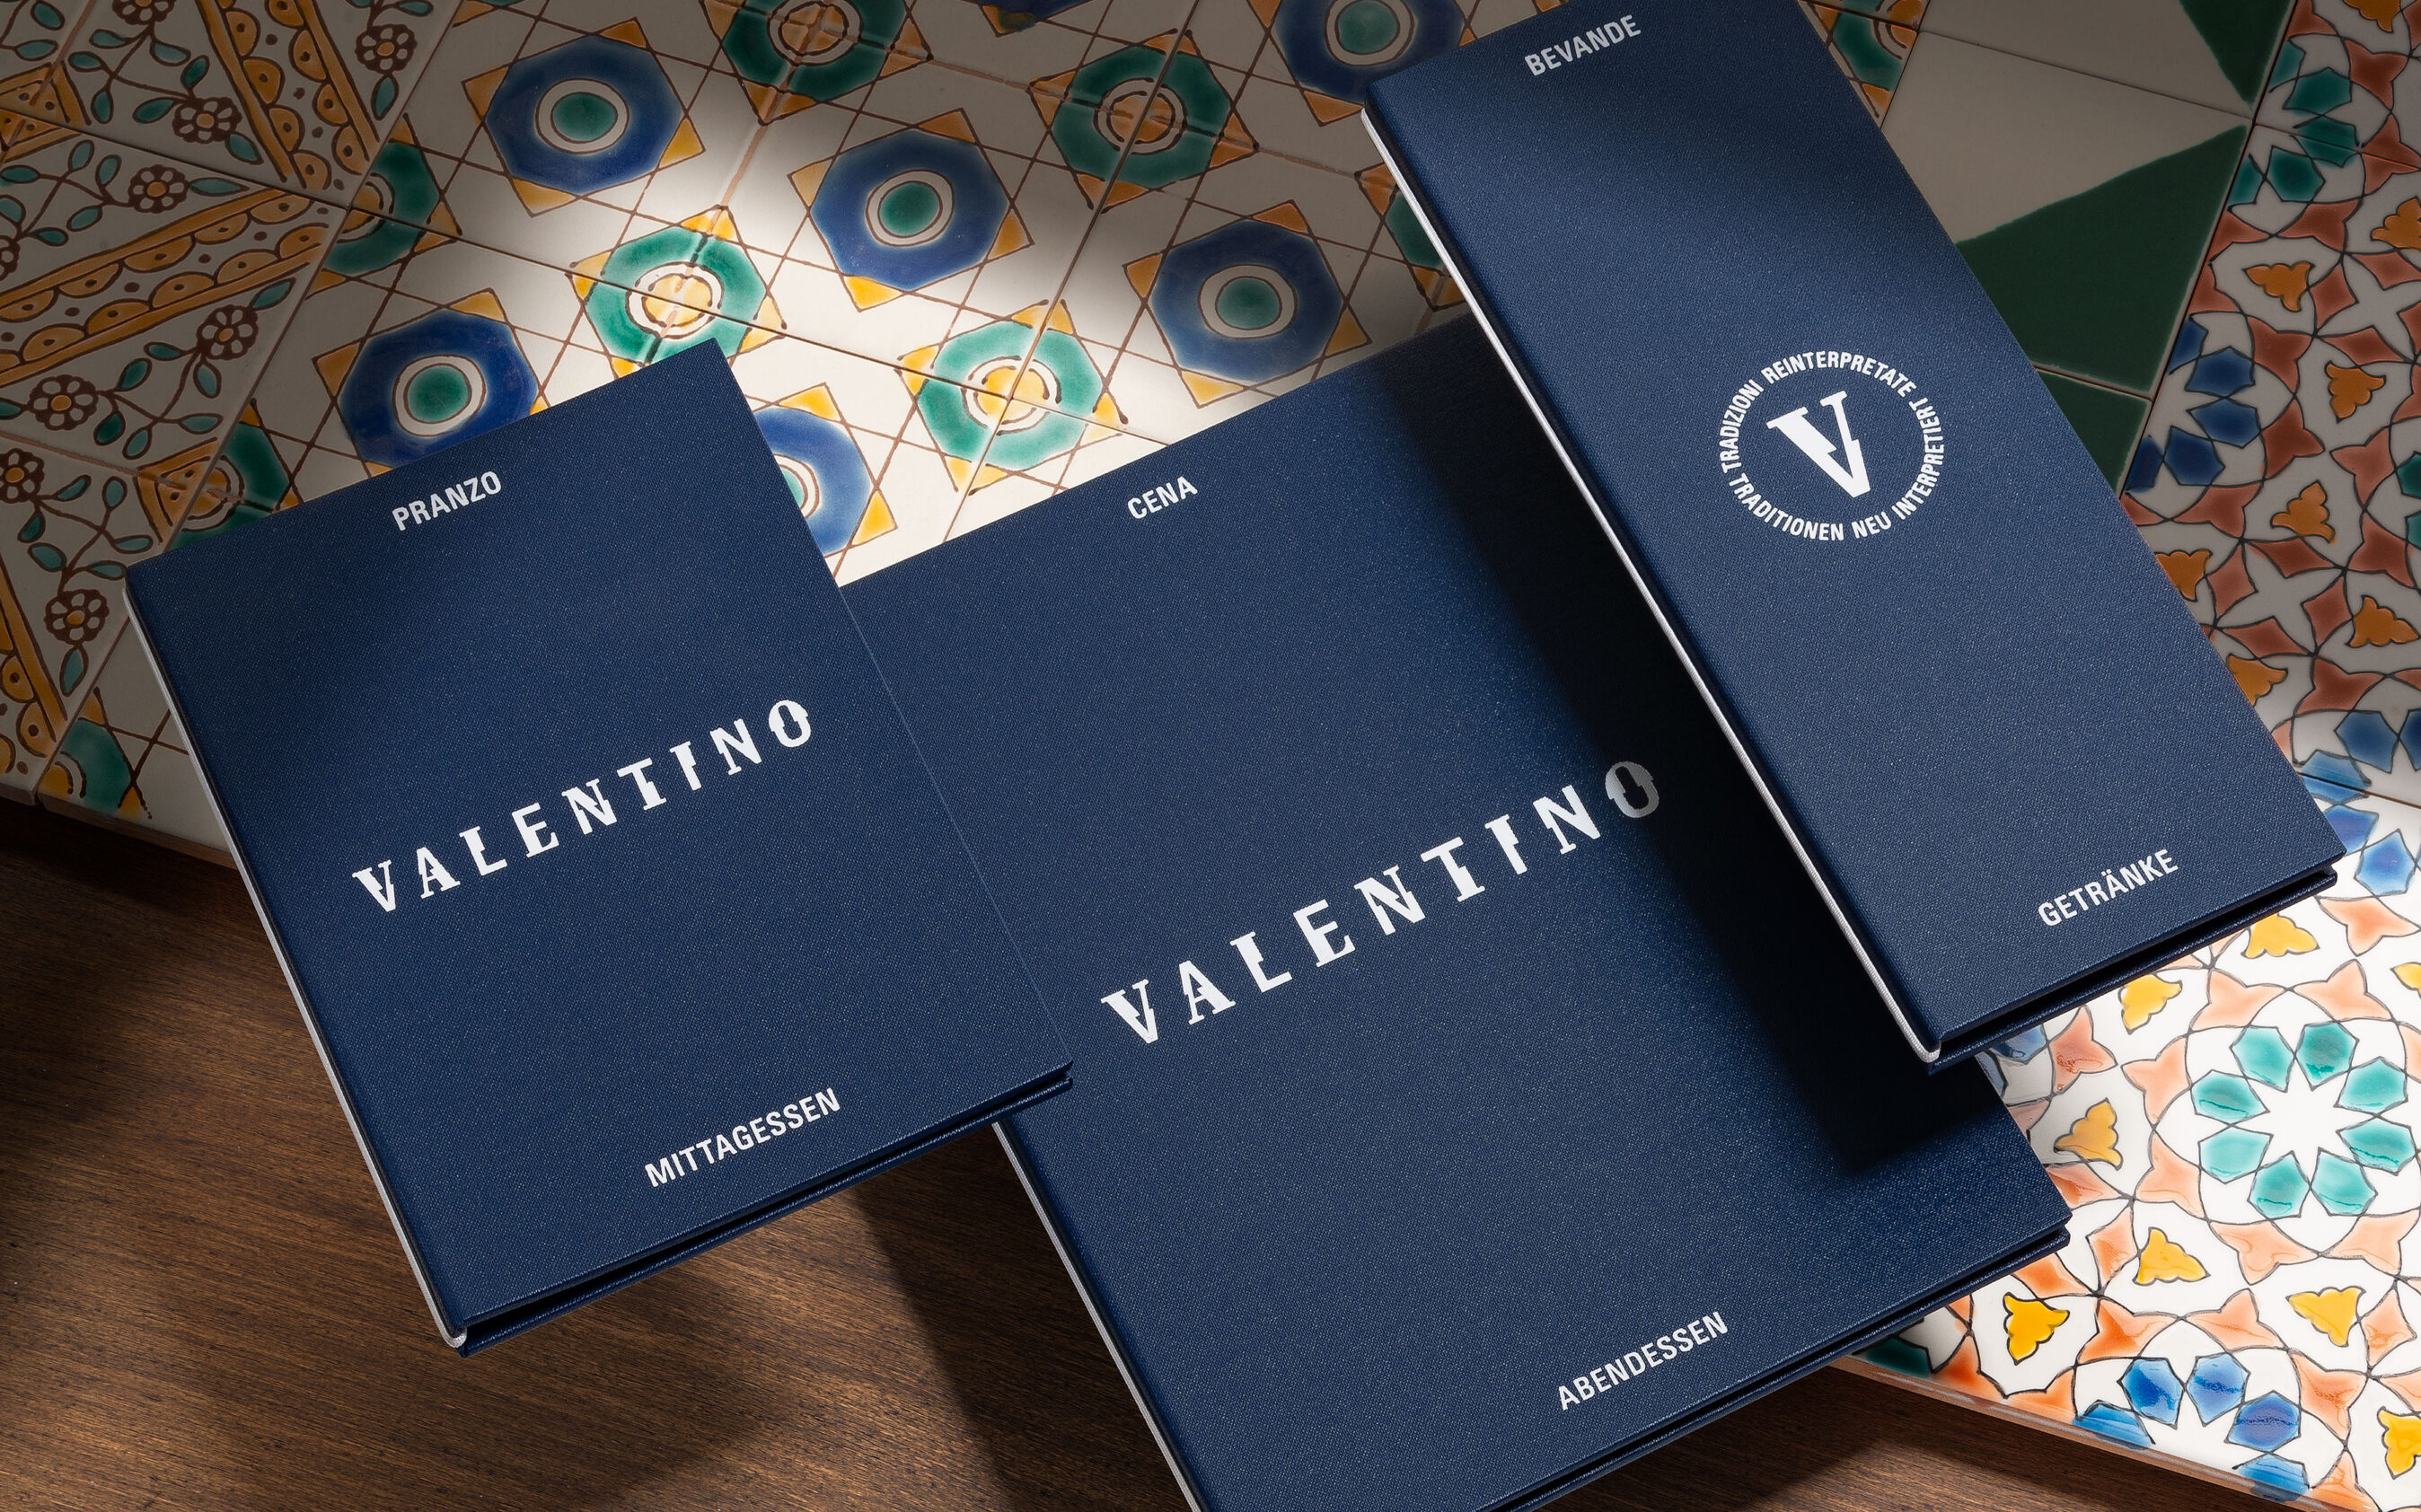 Gestaltung und Konzeption des Brandings für das Ristorante Valentino in Basel. Abgebildet sind zwei Speisekarten und eine Getränkekarte mit dem Logo und dem Signet.